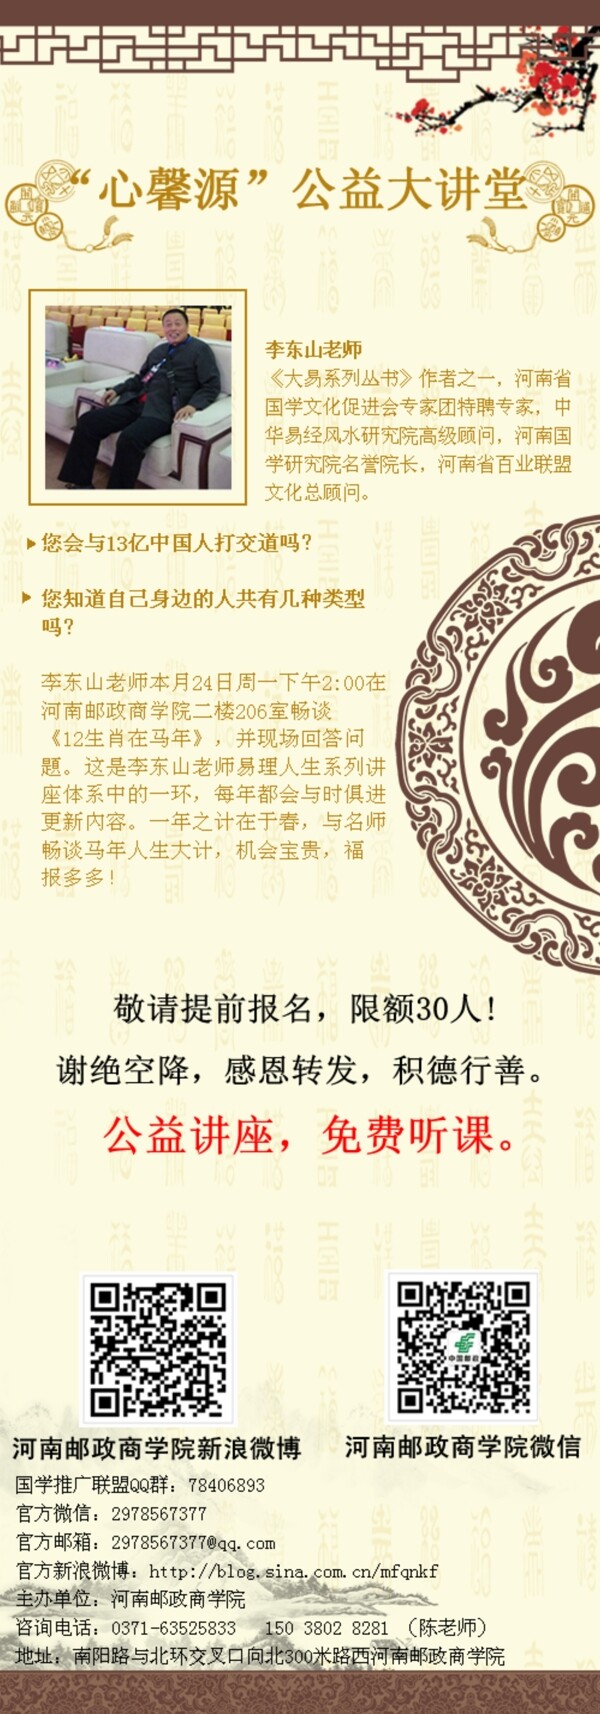 中国风微信博宣传设计